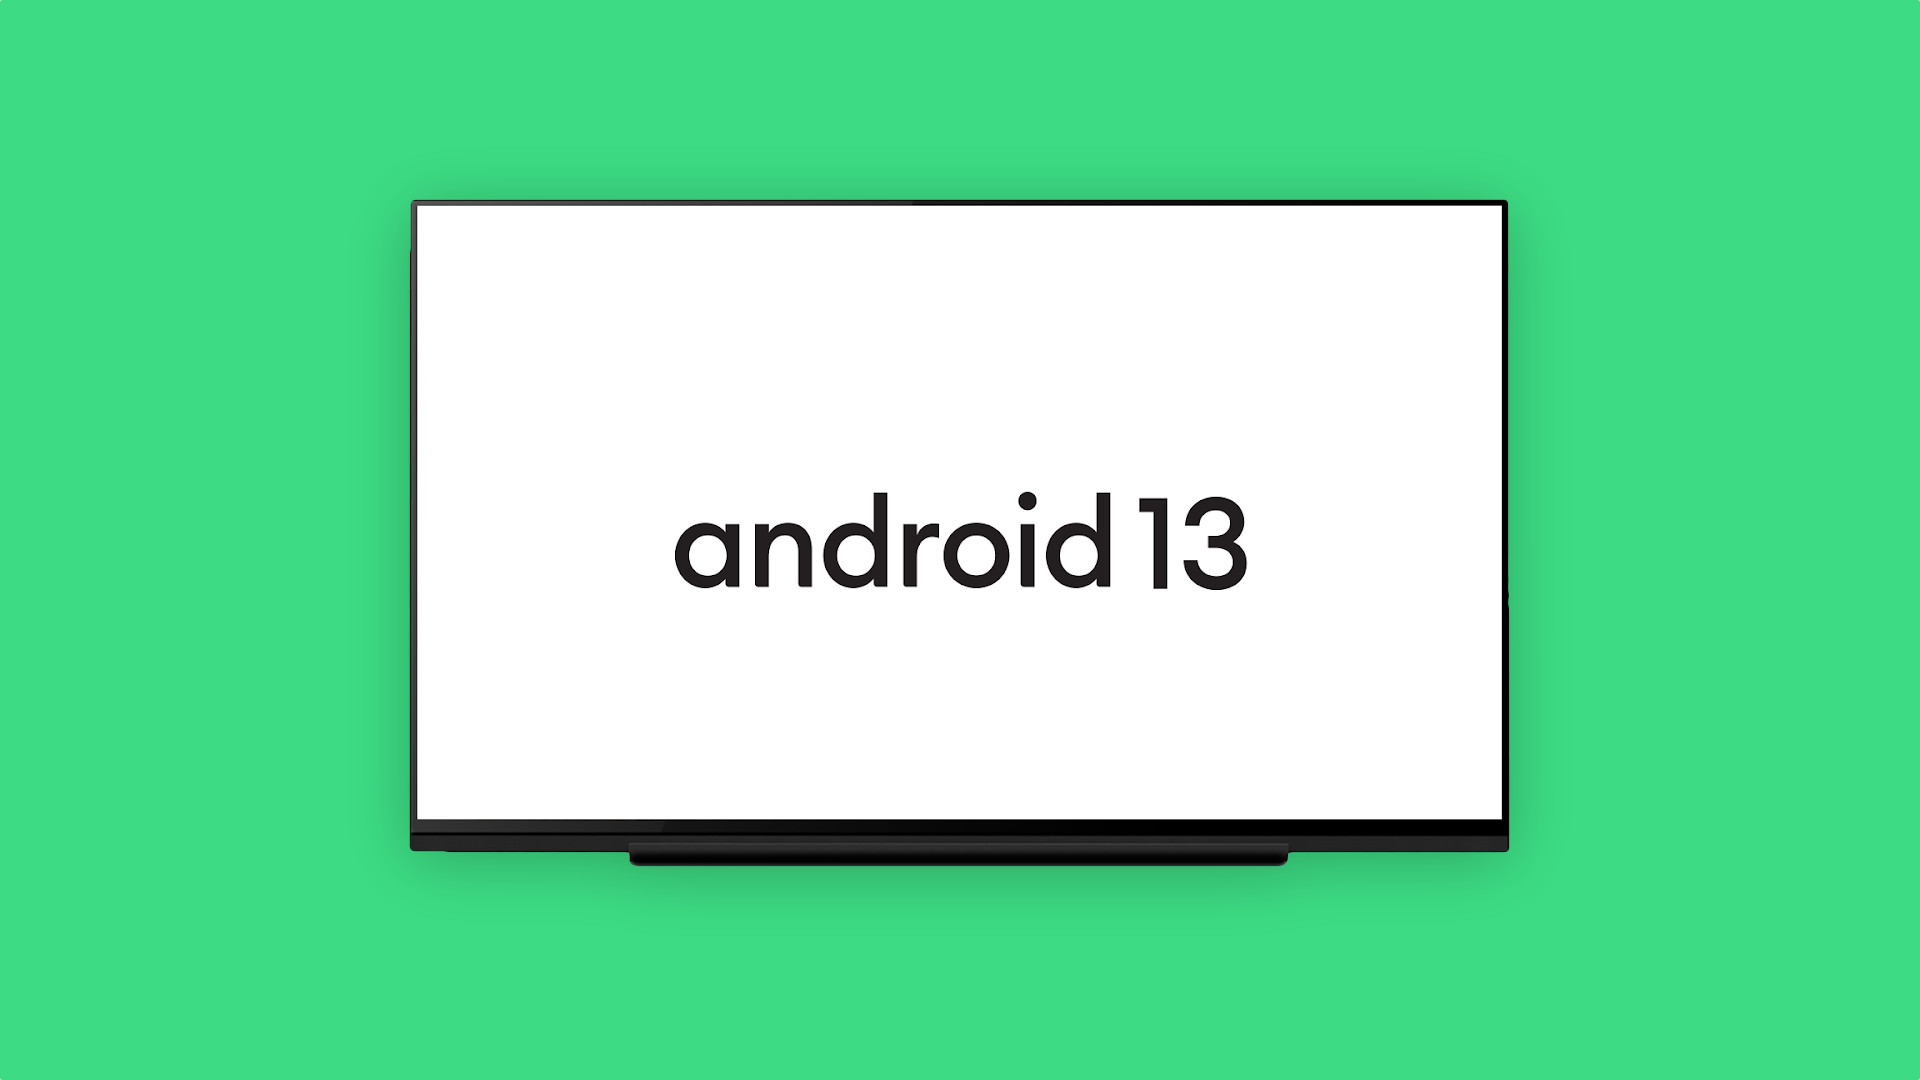 Телевизор 13 андроидом сенсорный. Android TV 13.